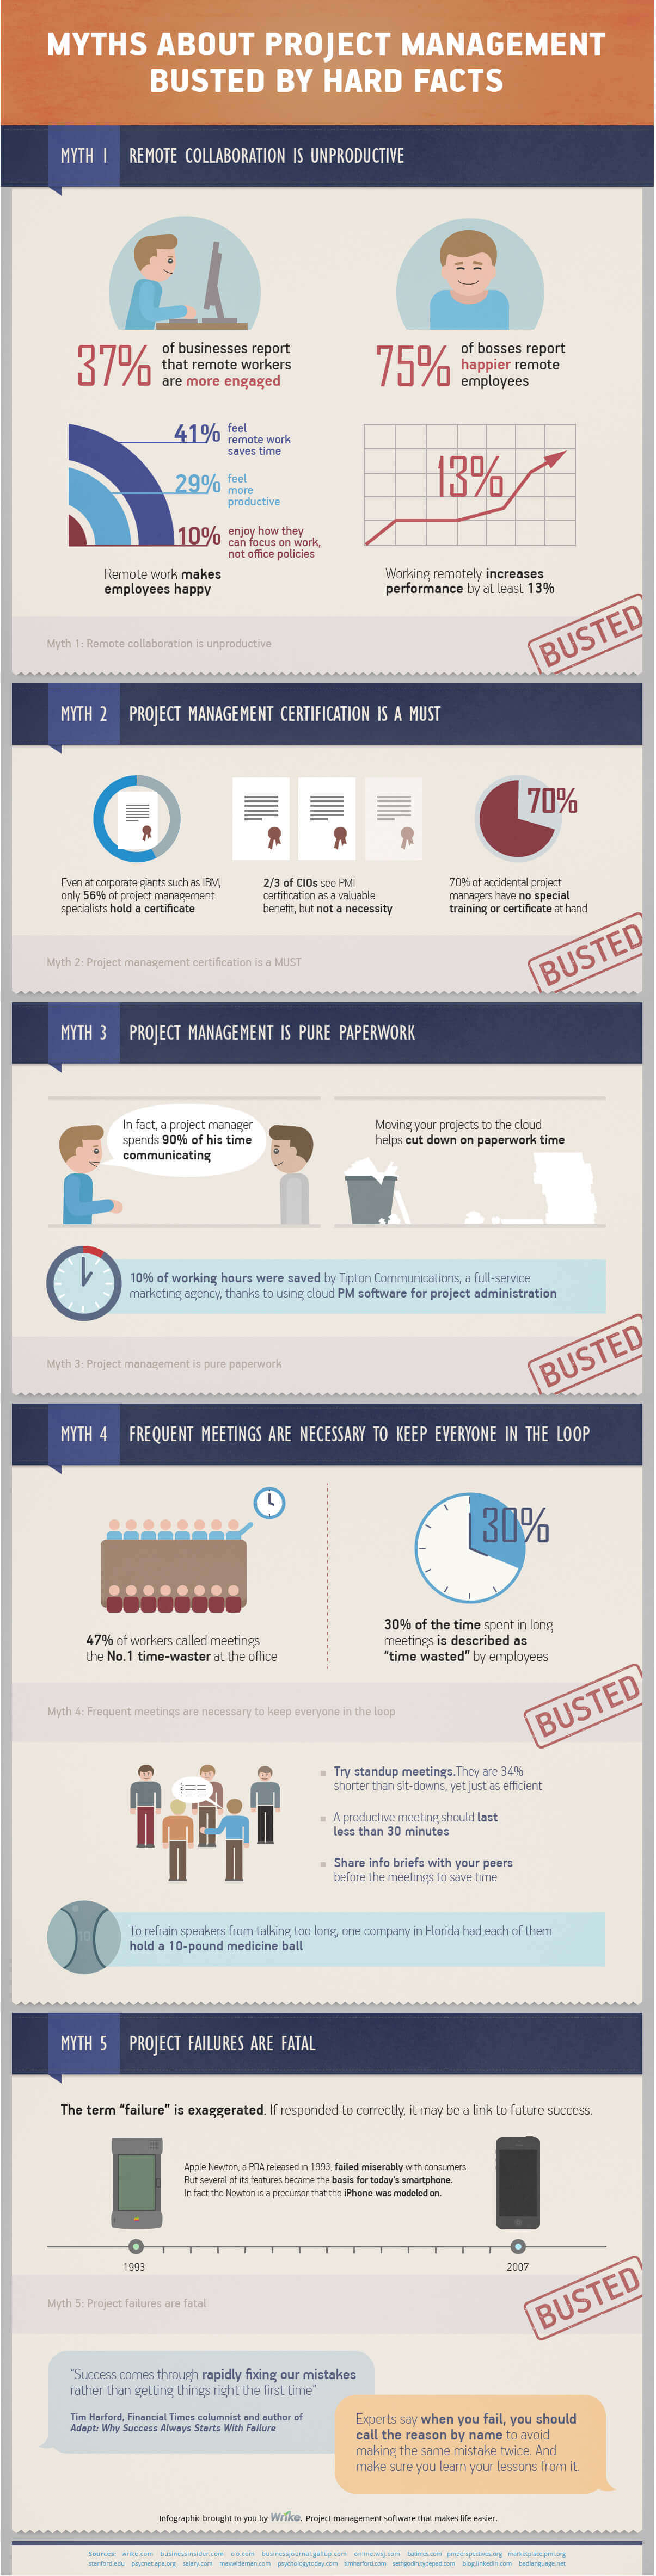 project management myths